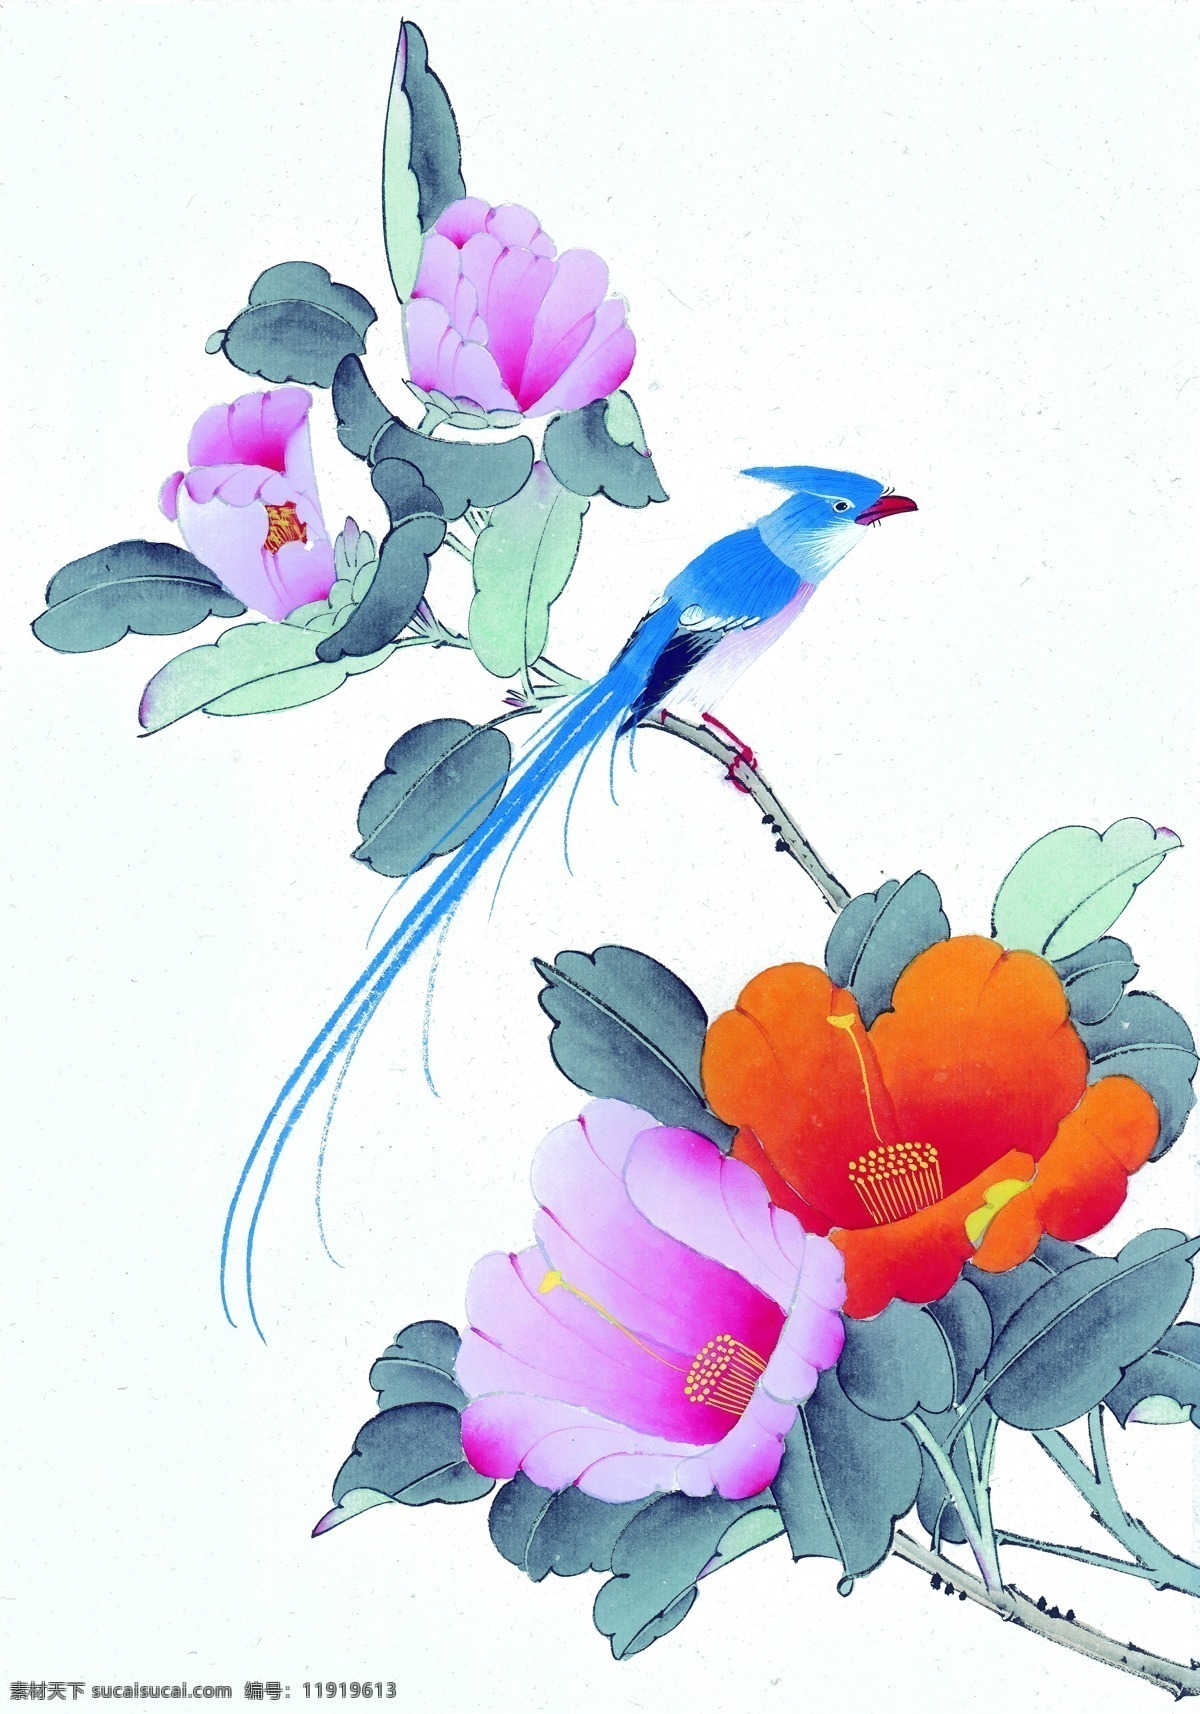 彩色 绘画 图 花儿 牡丹 小鸟 文化艺术